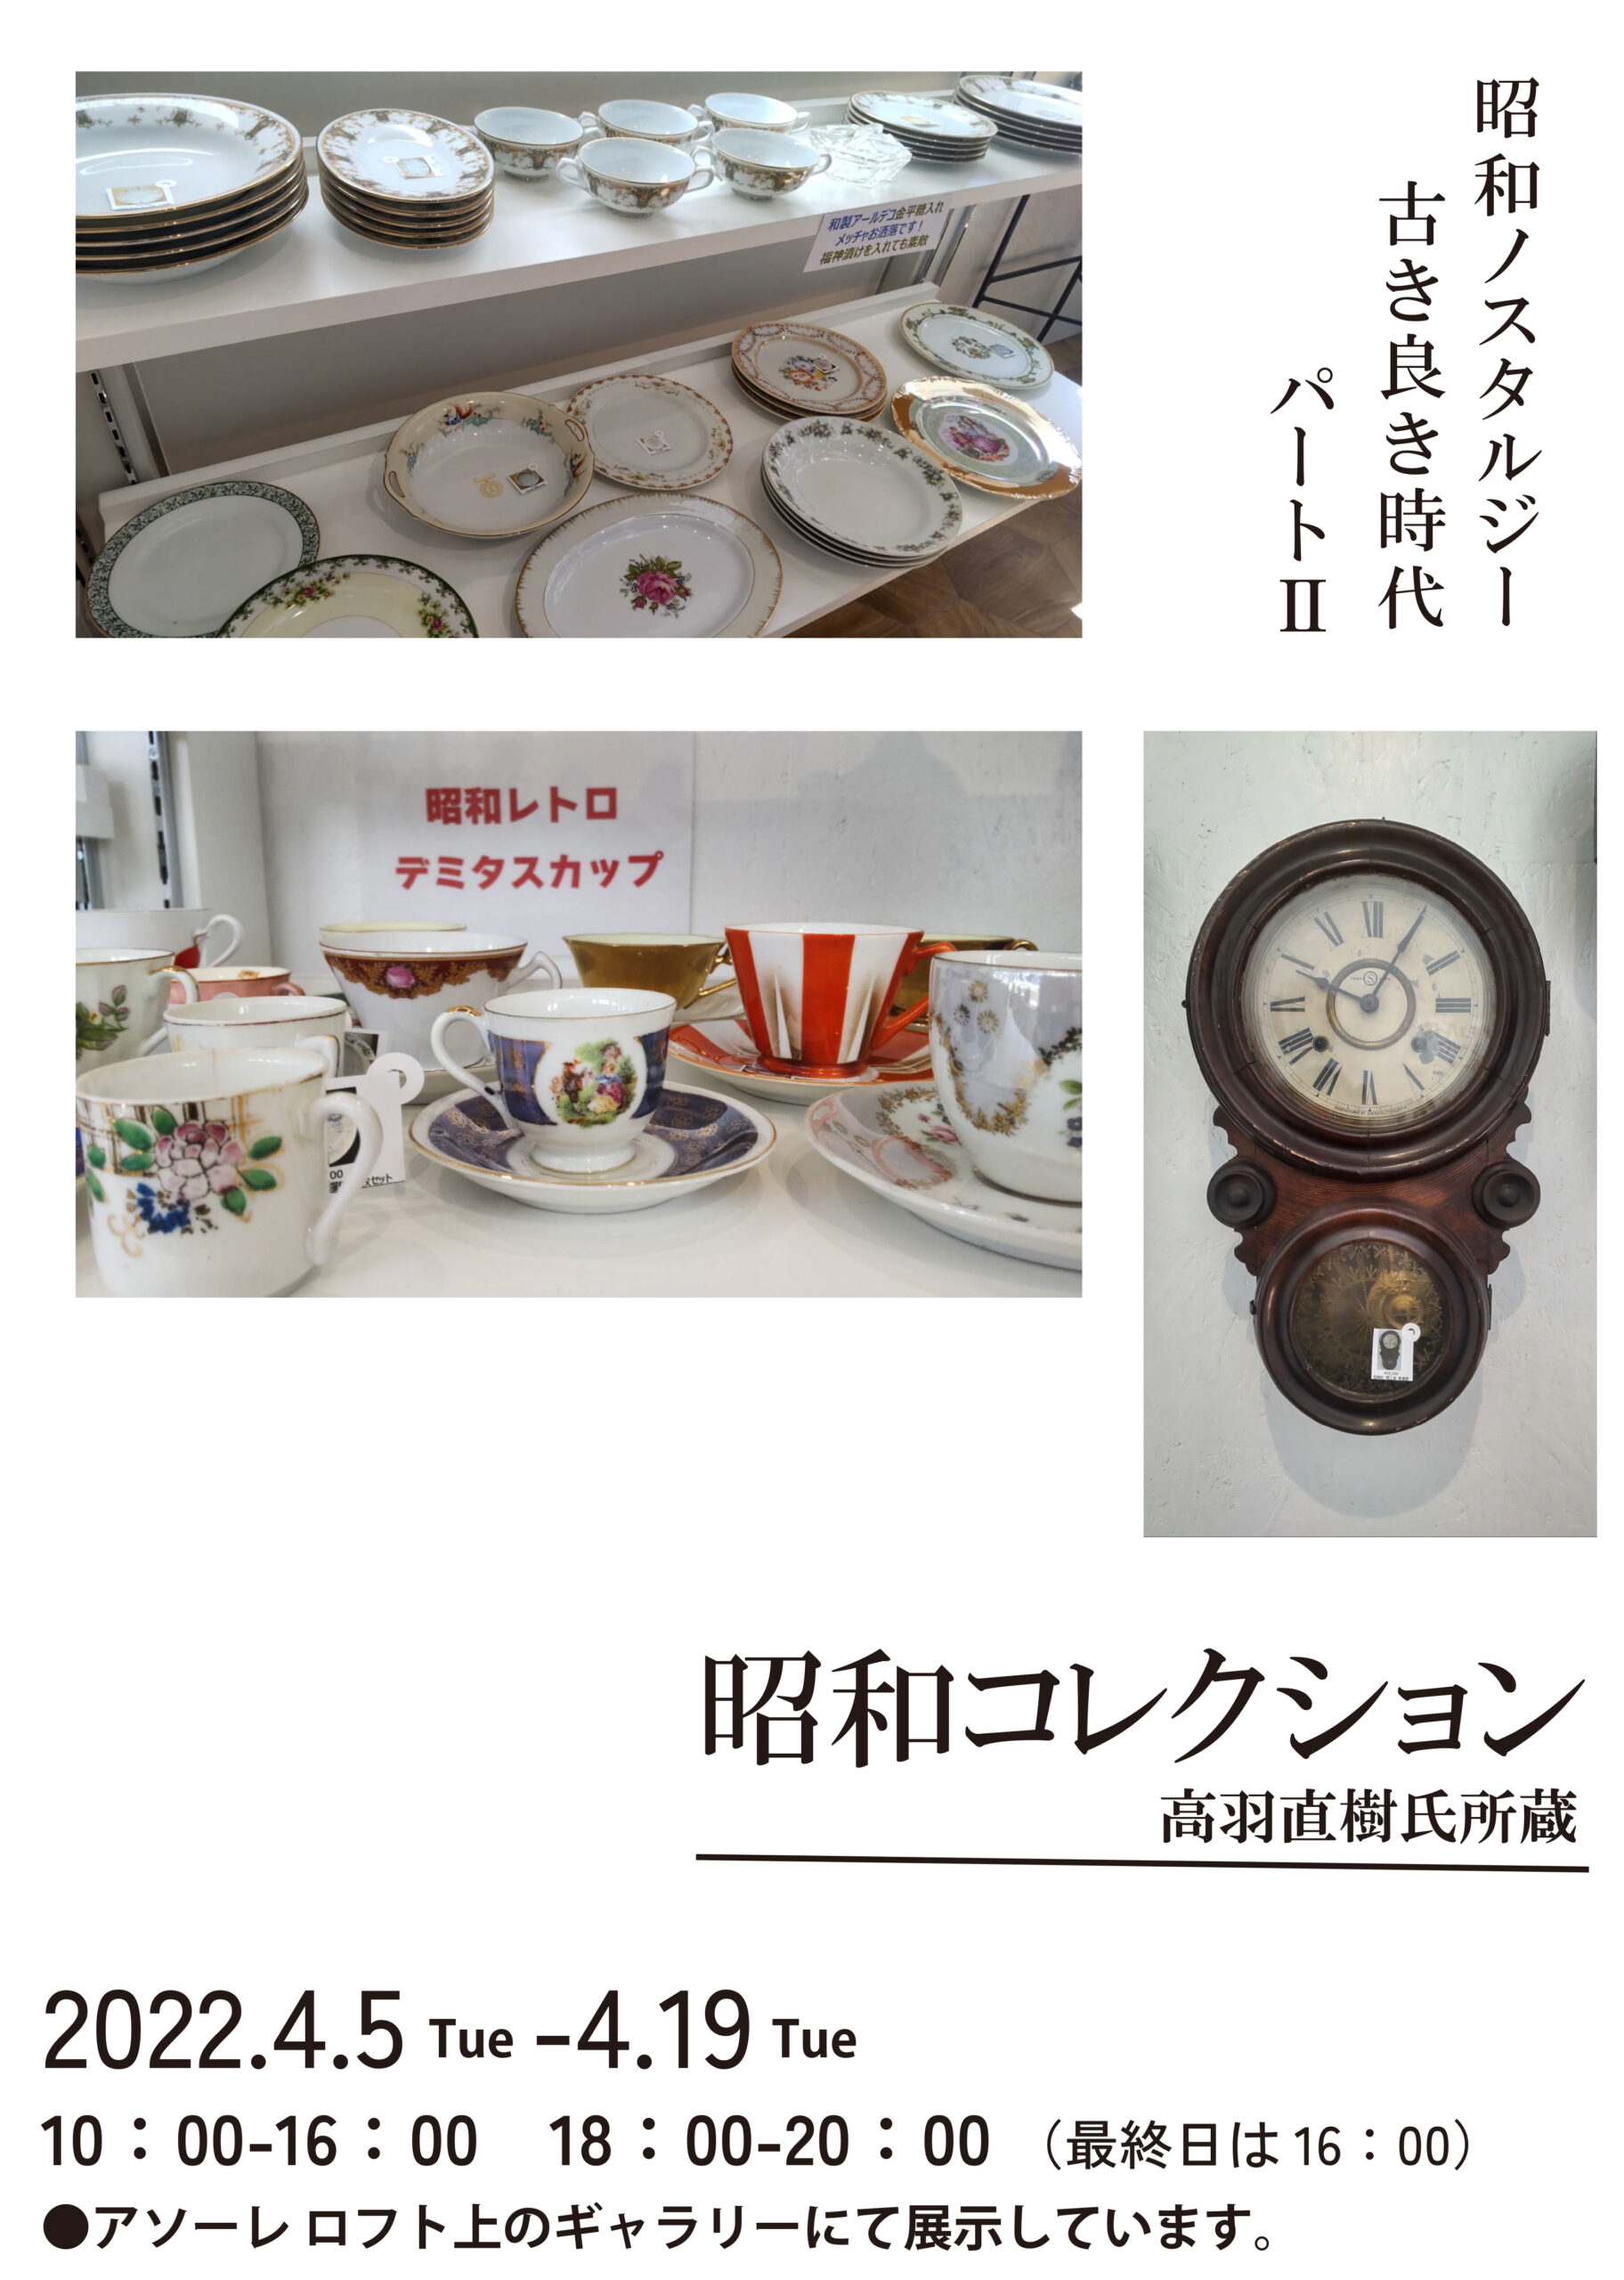 昭和コレクションパート２ 高羽直樹氏所蔵 | 刈谷市のレトロ喫茶